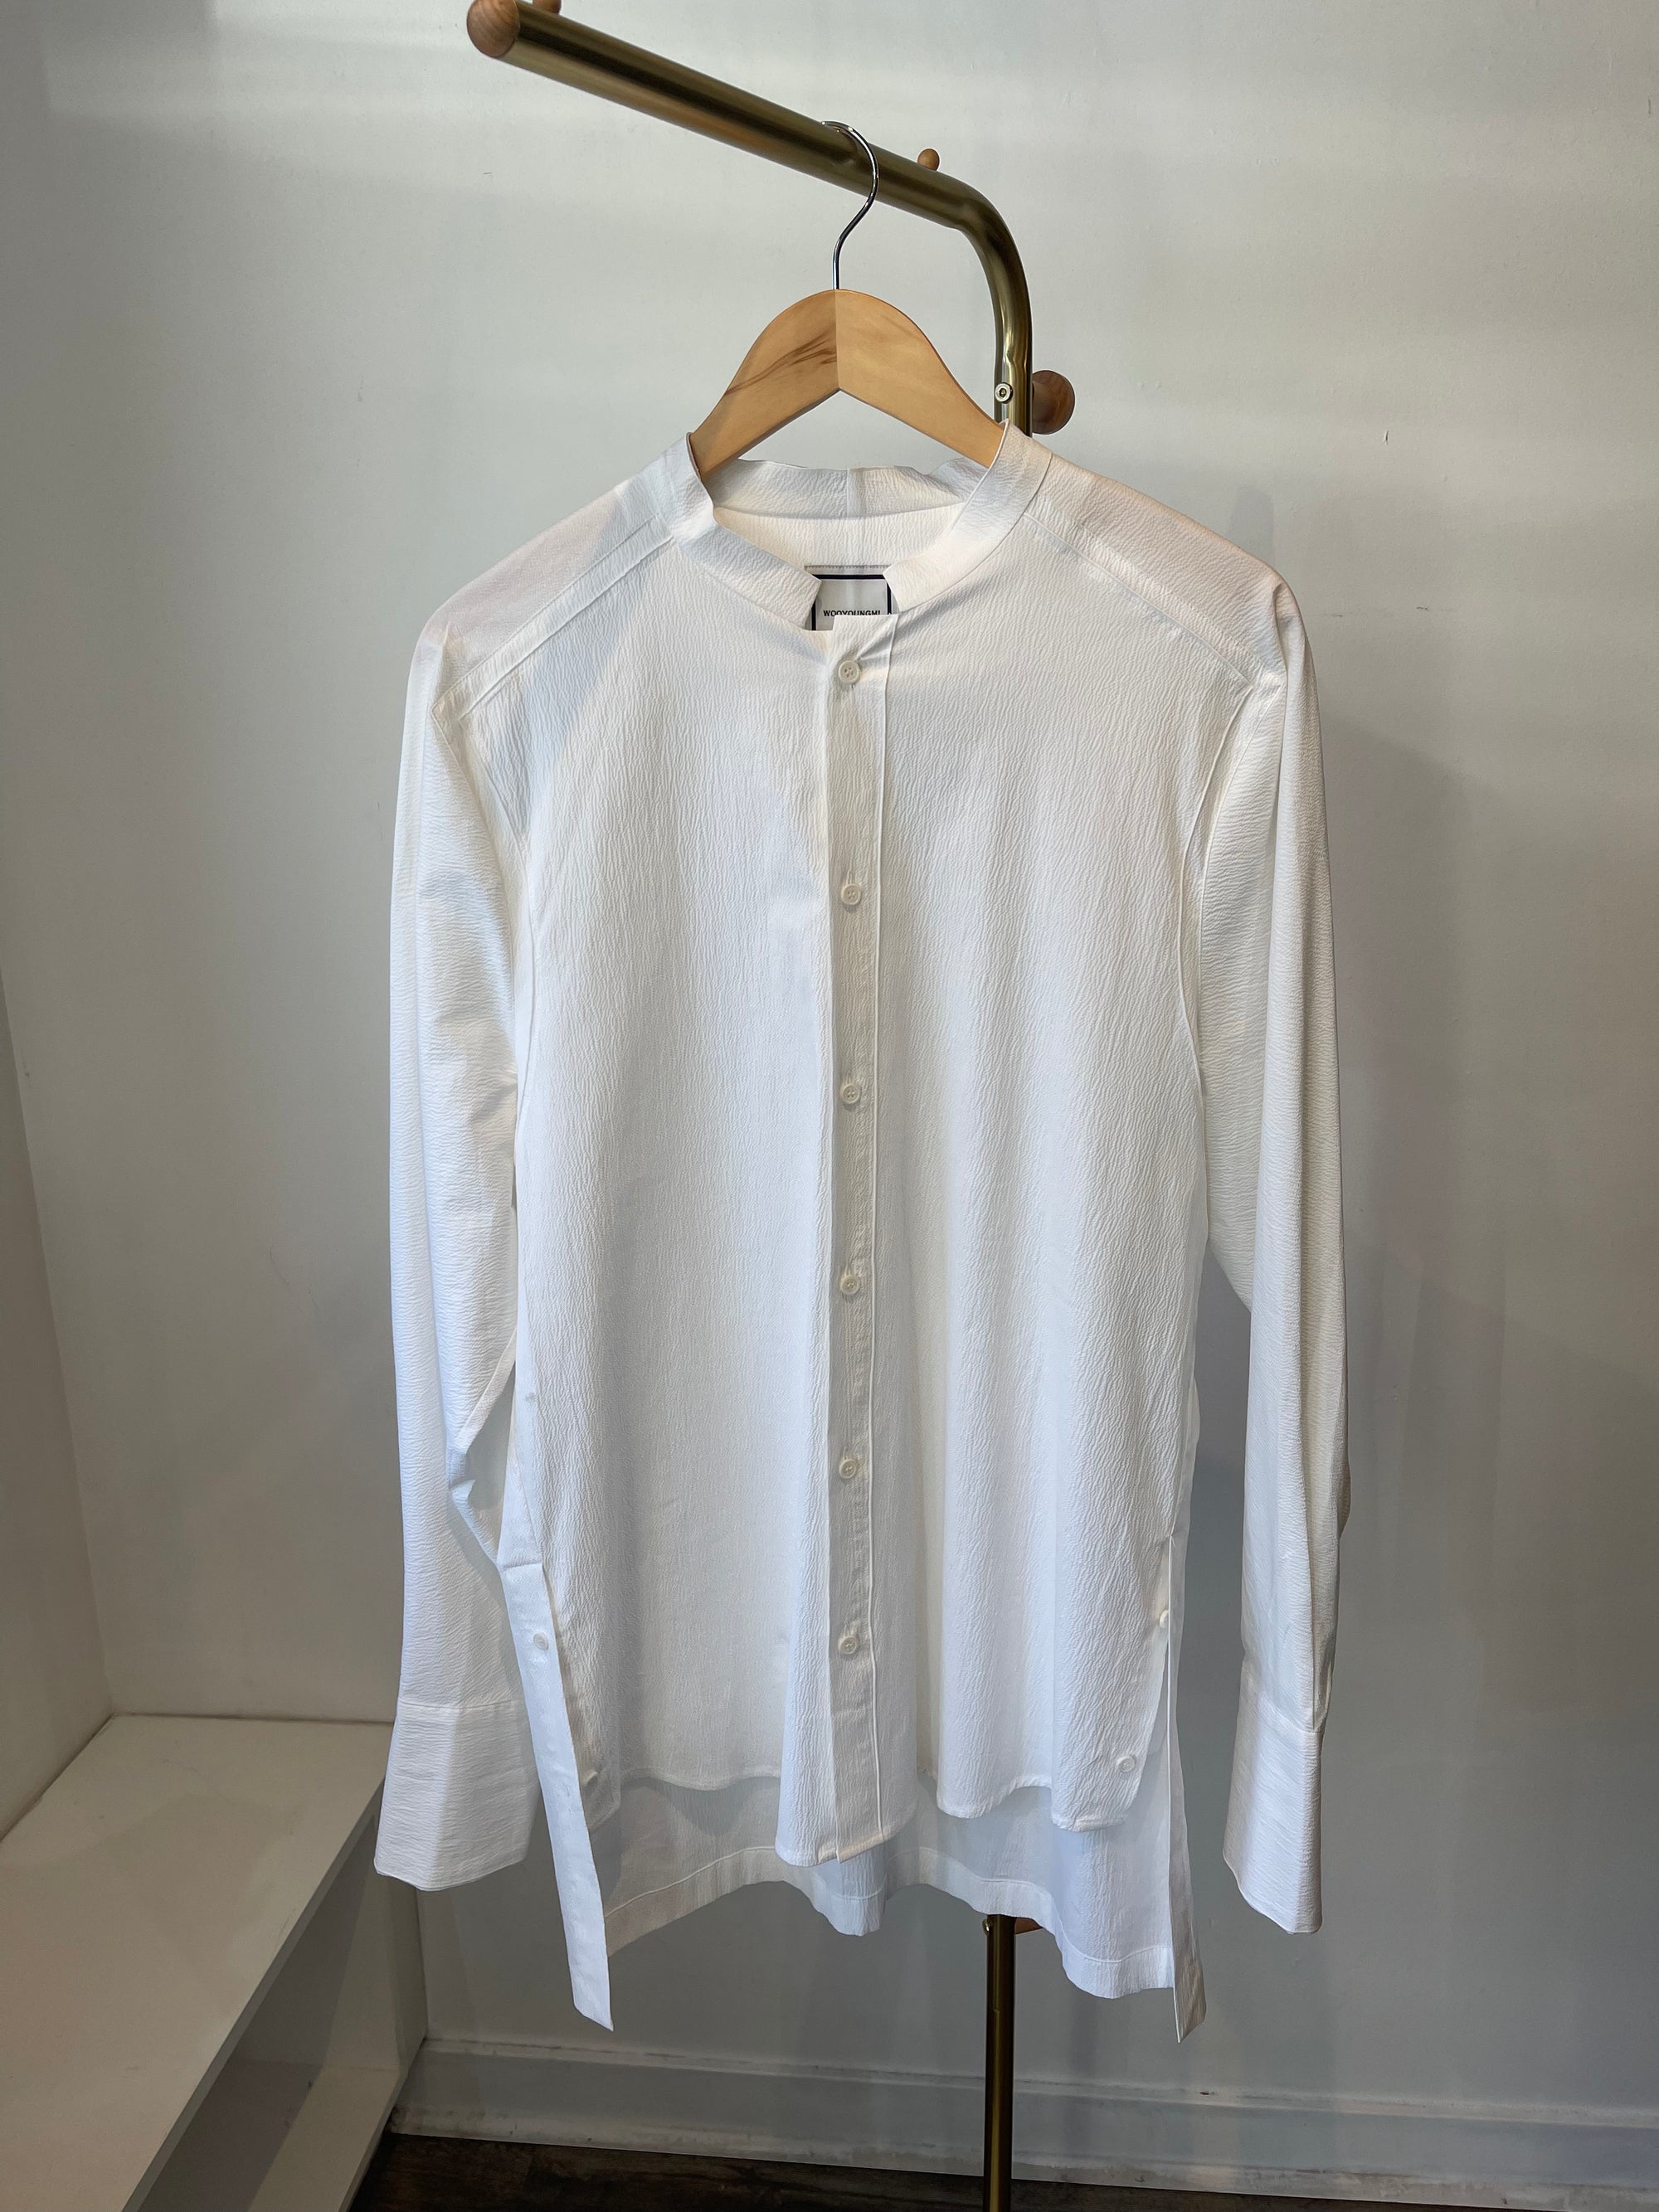 Wooyoungmi Textured White Dress Shirt, 48